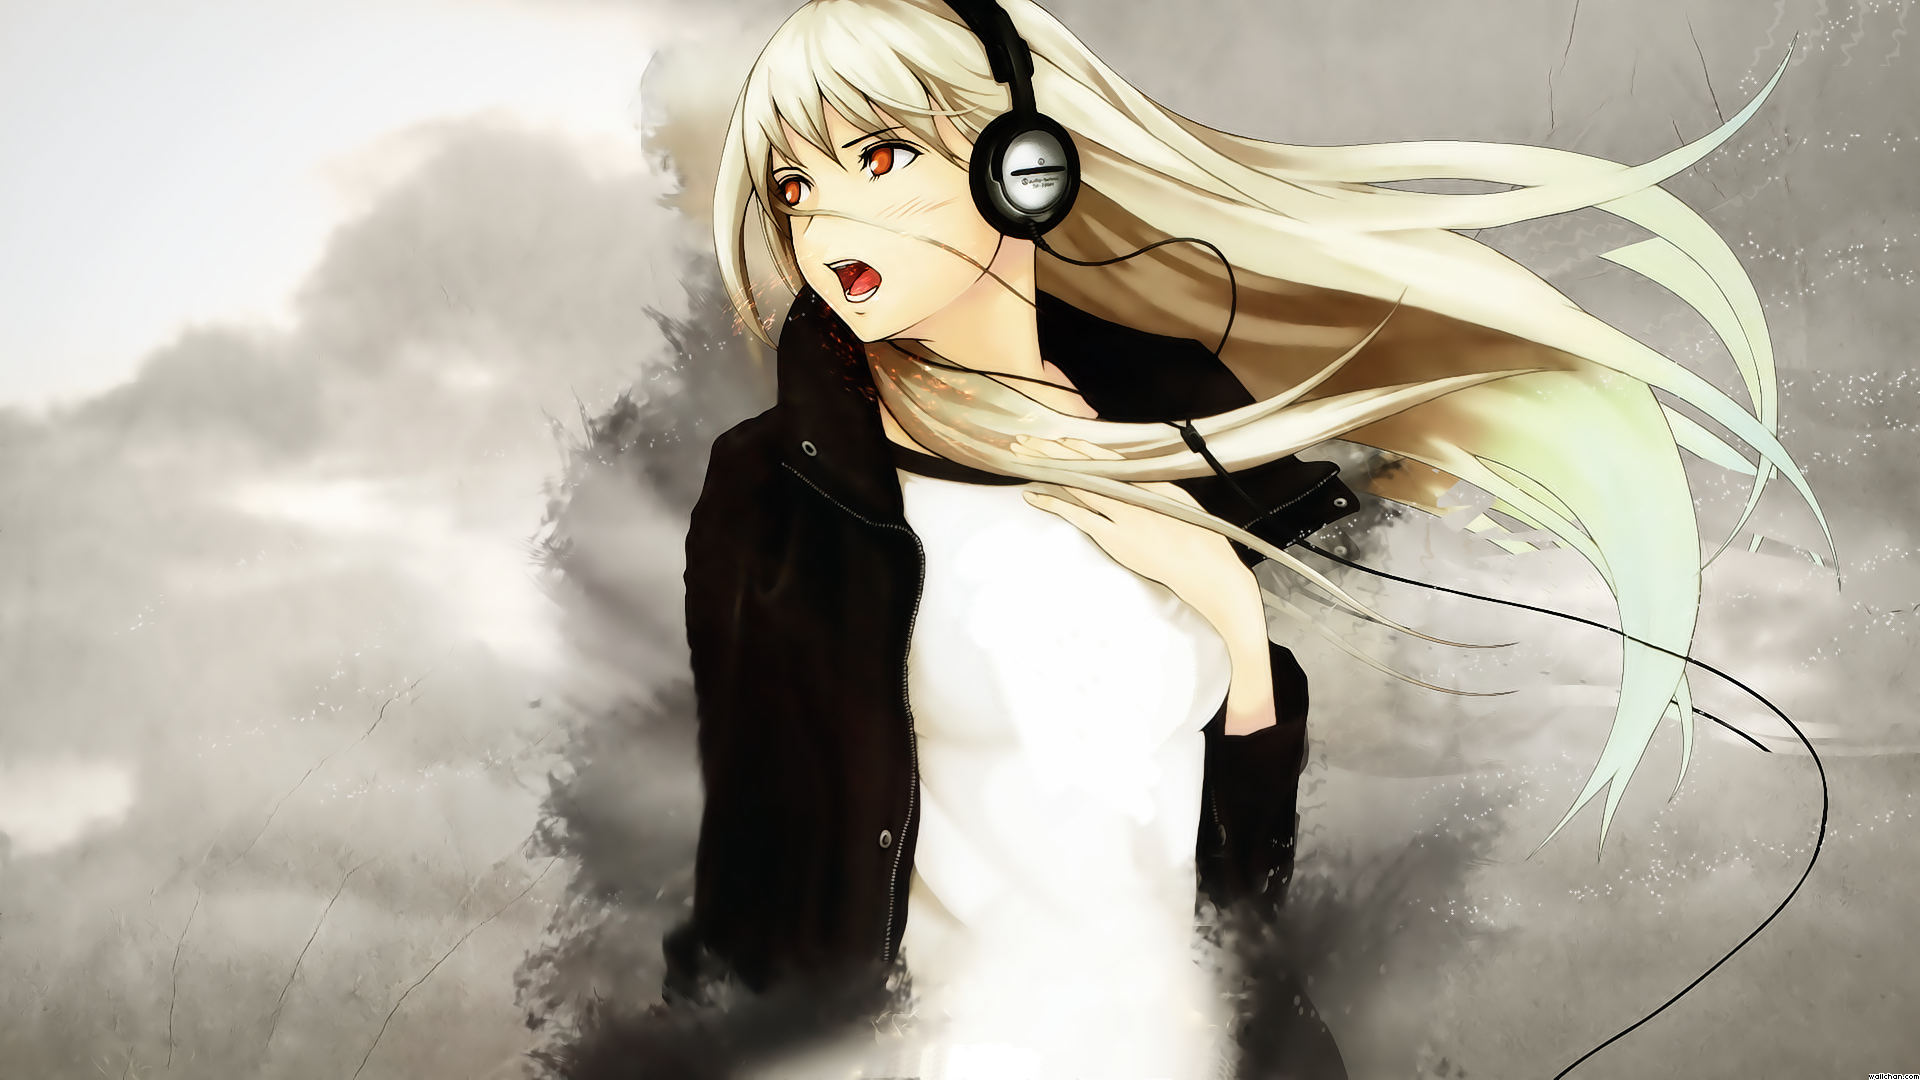 Anime Girl Music Wallpaper Image Wallpaperlepi